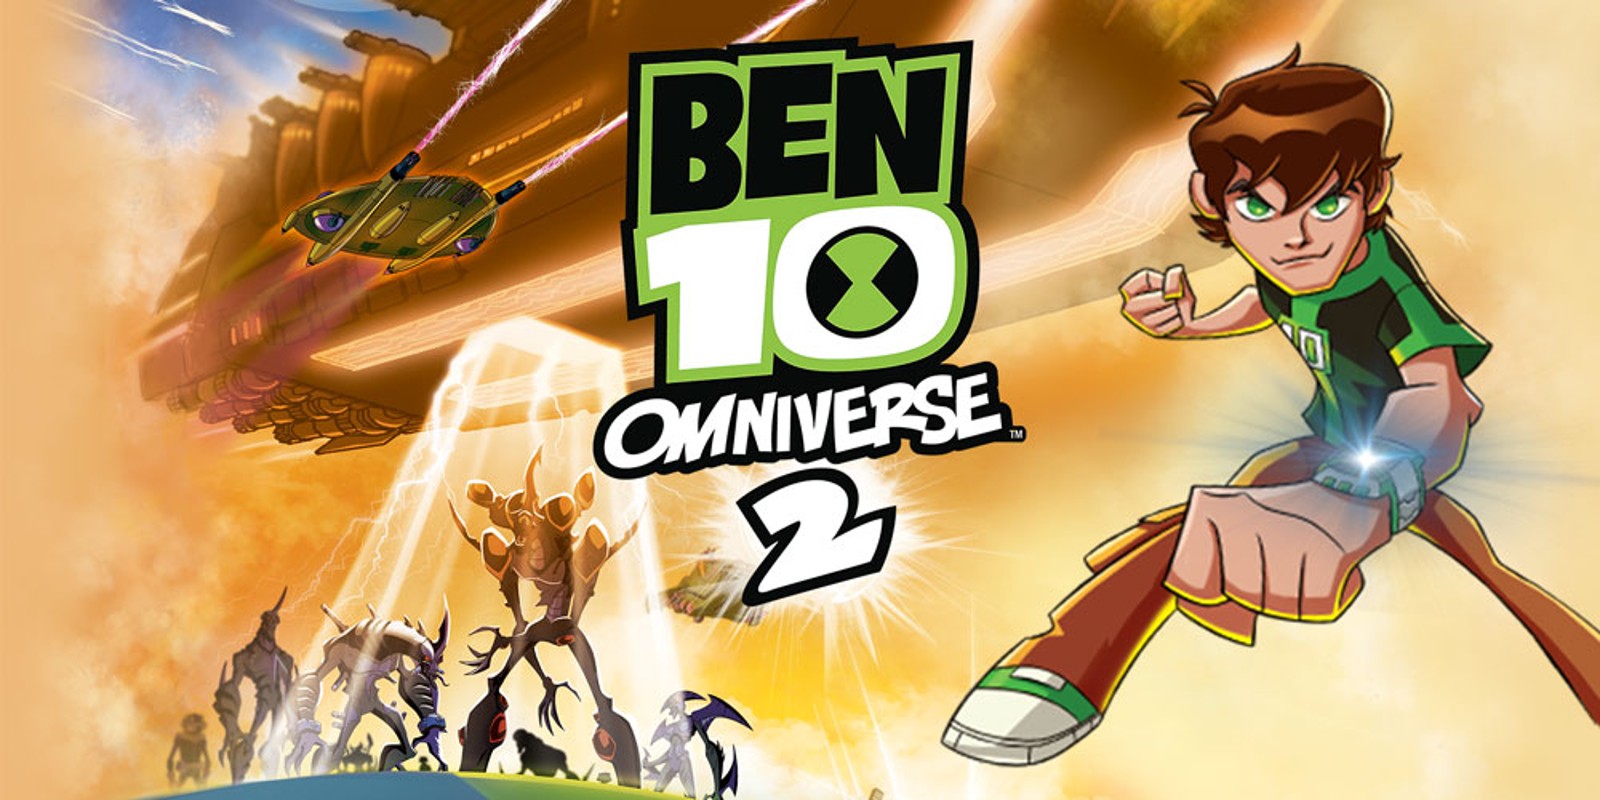 Amazon.com: Ben 10 Omniverse 2 - Nintendo 3DS: Video Games